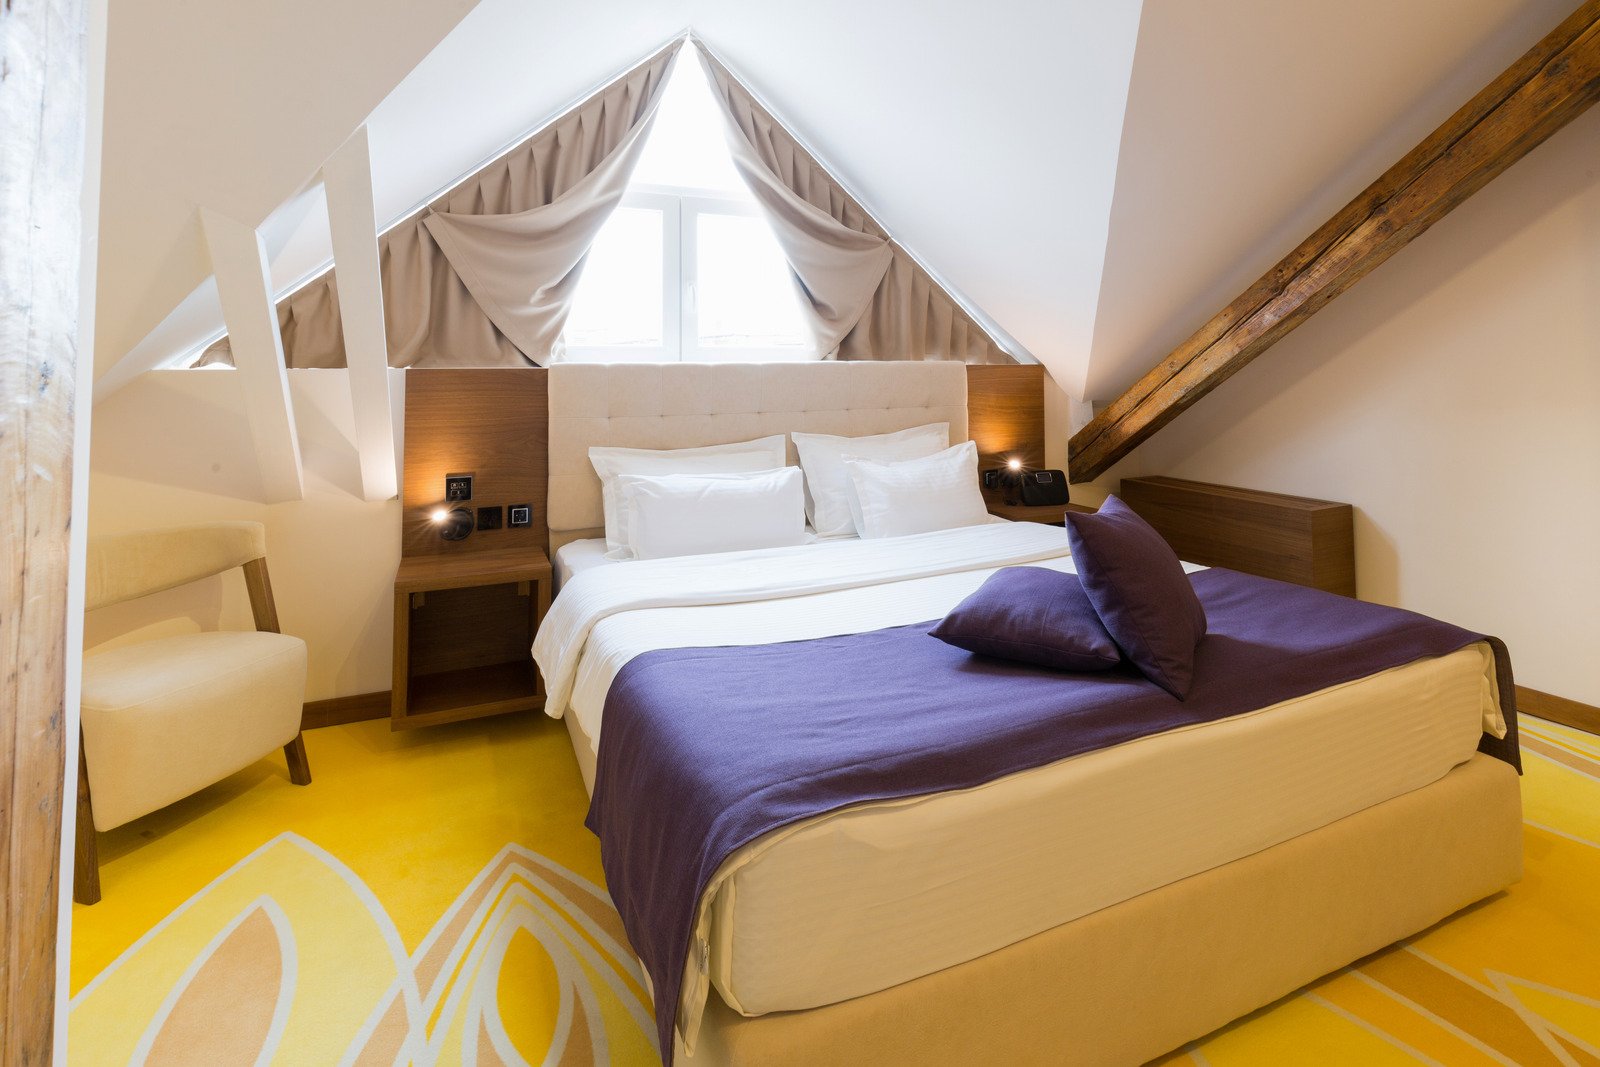 żółty dywan, drewniane belki w sypialni